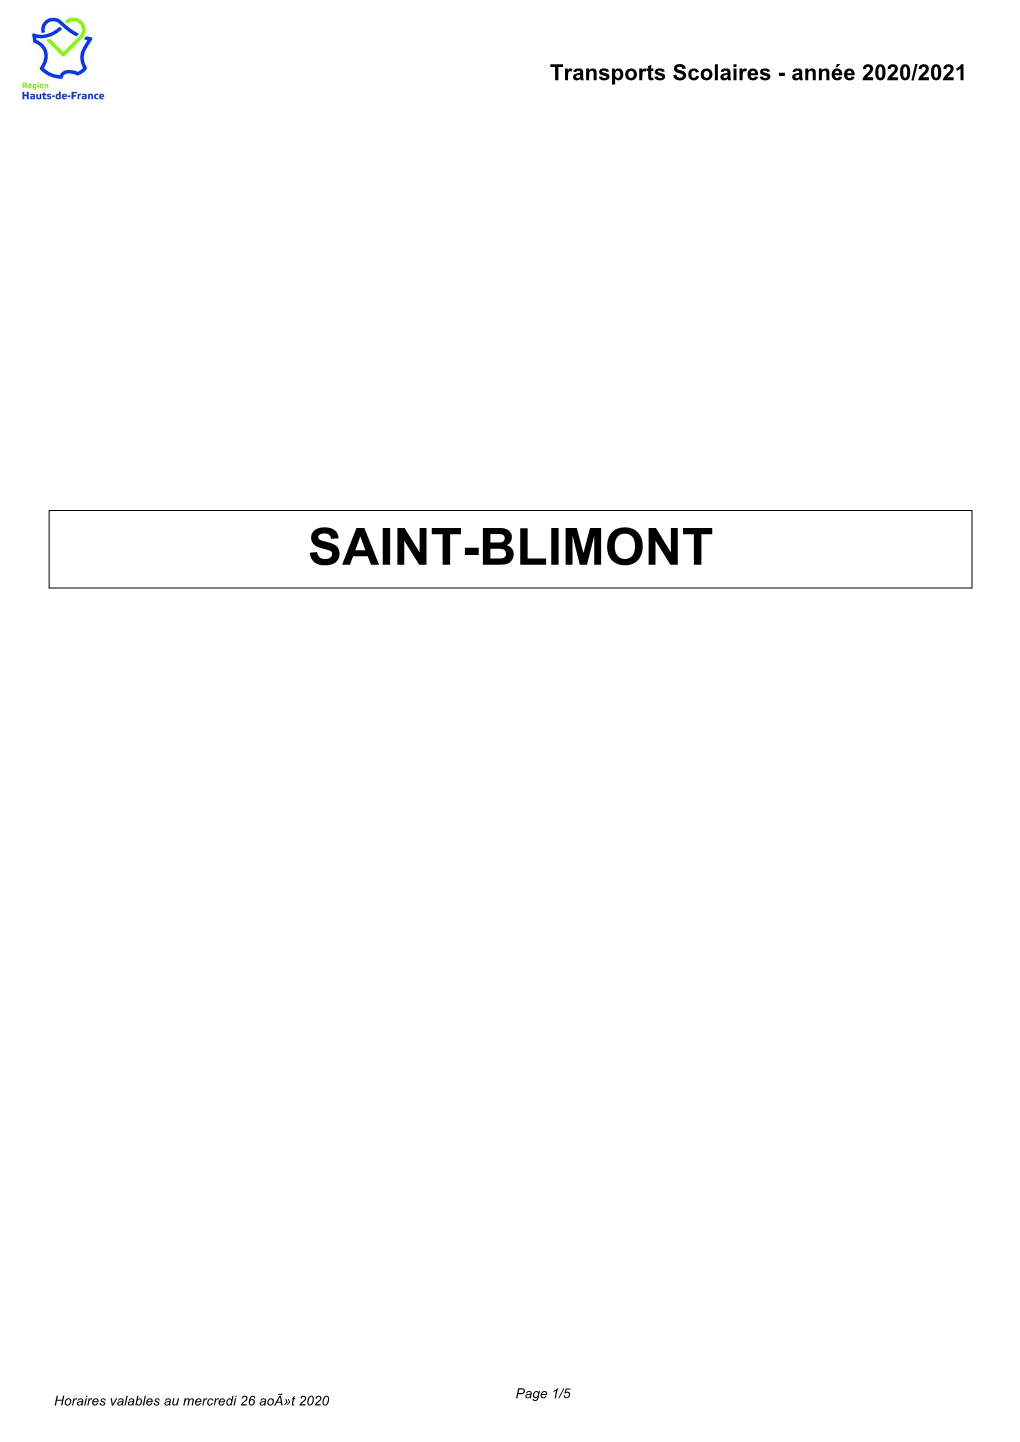 Transports-Scolaires-Saint-Blimont